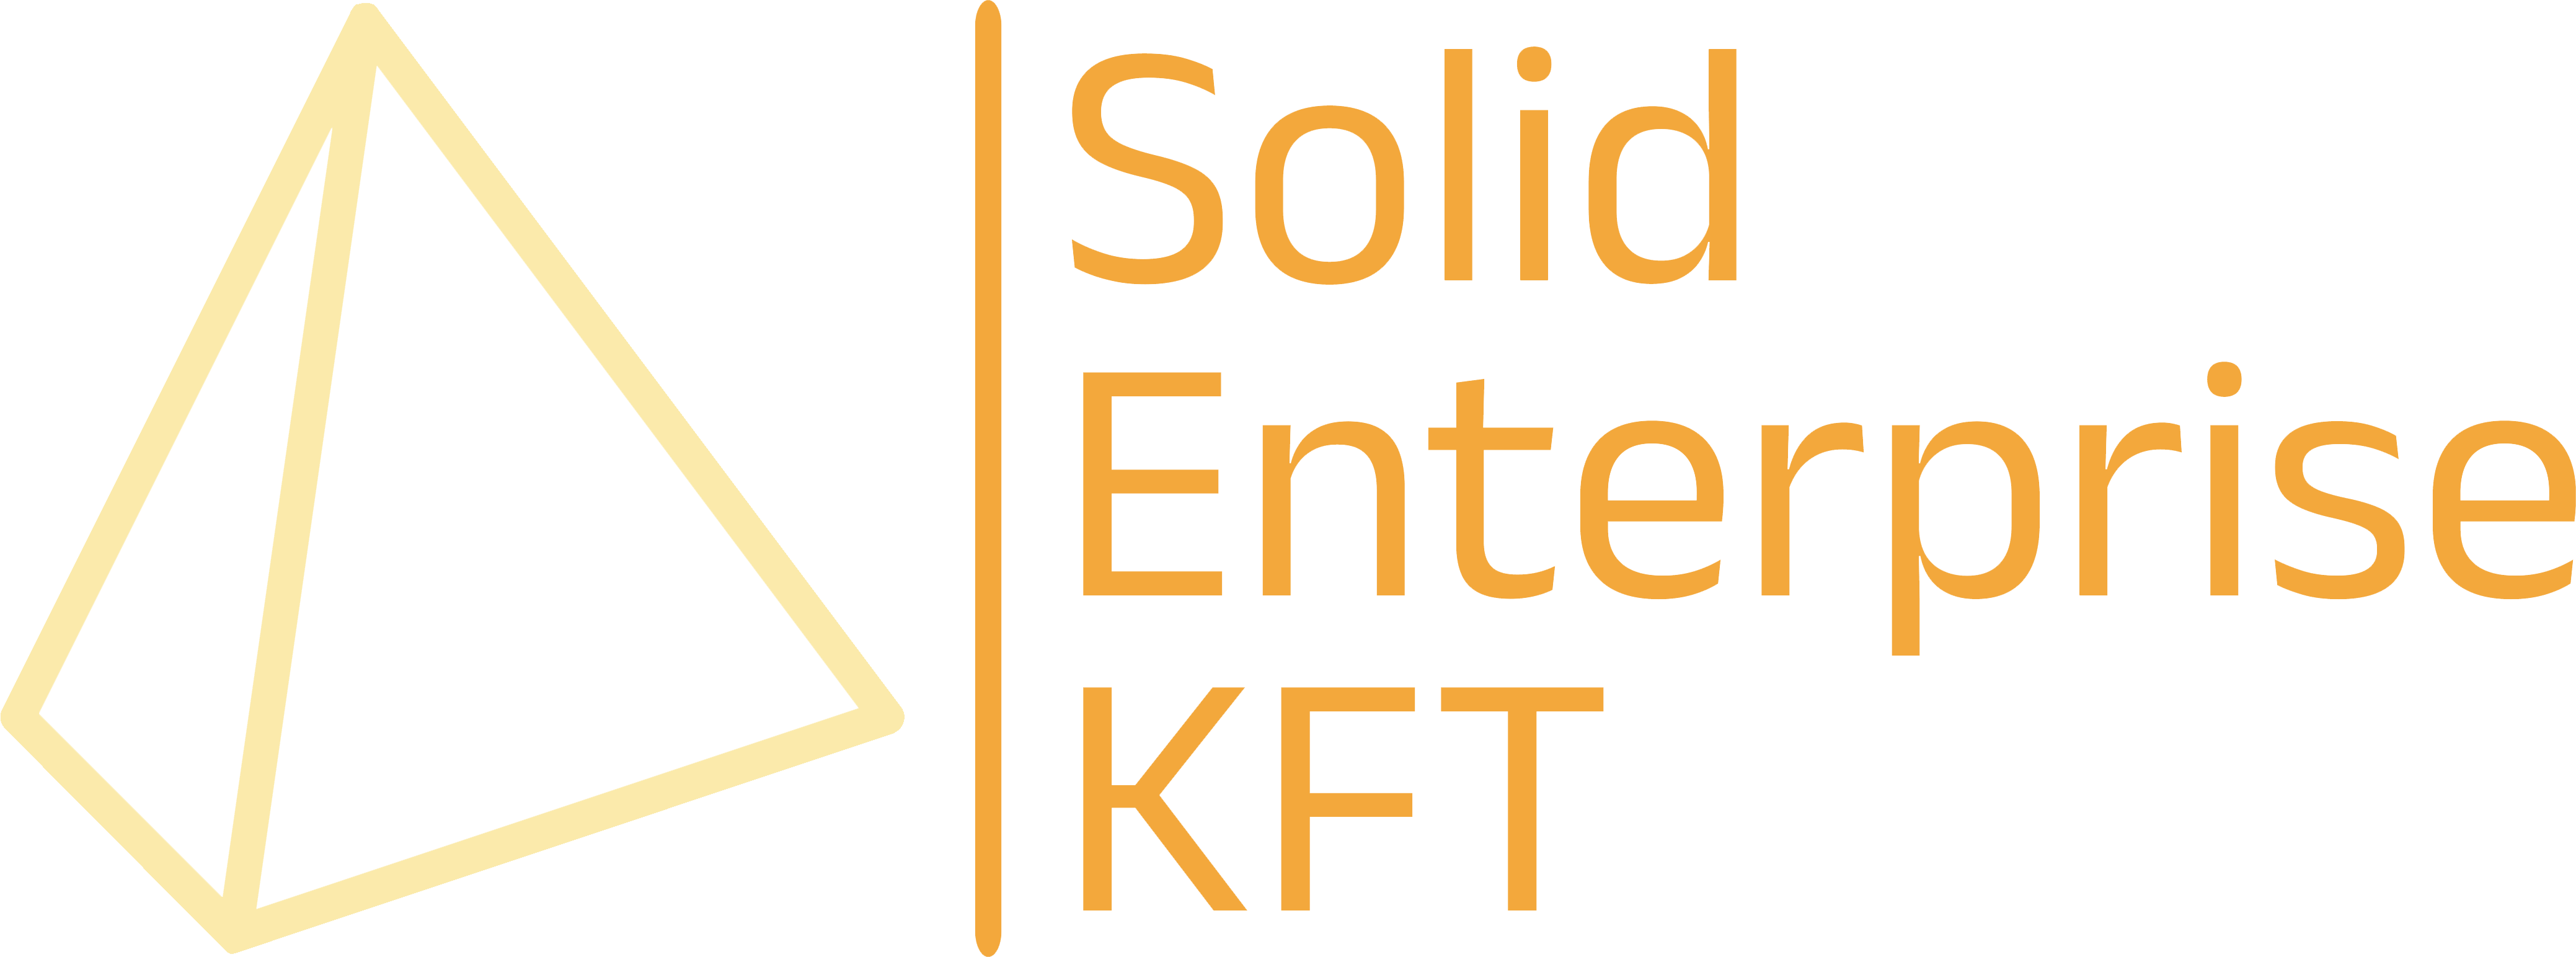 Solid Enterprise KFT